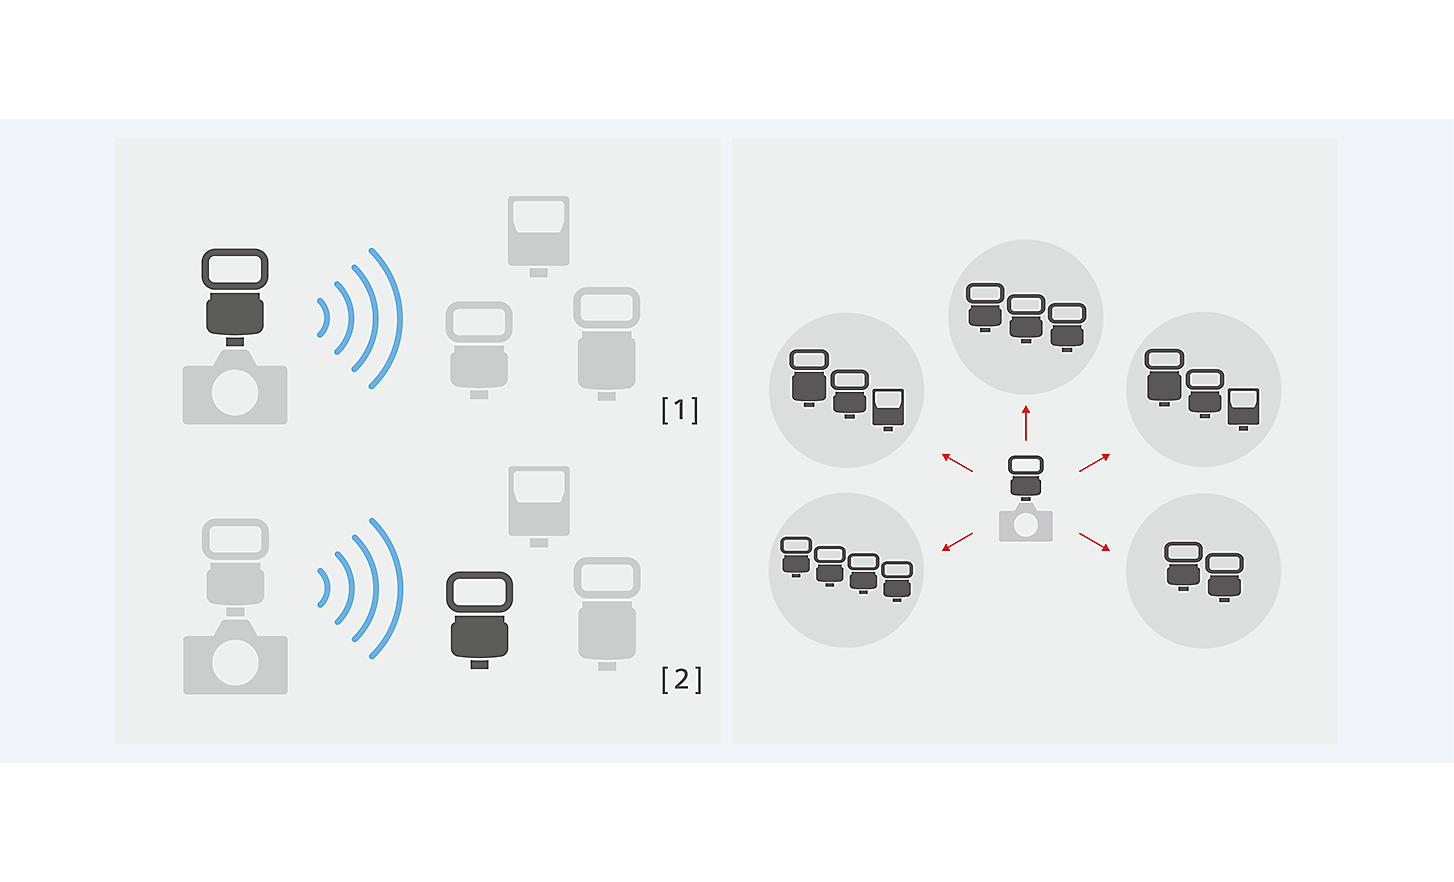 Imagen de cómo controlar 15 unidades flash en 5 grupos con la comunicación inalámbrica por radio